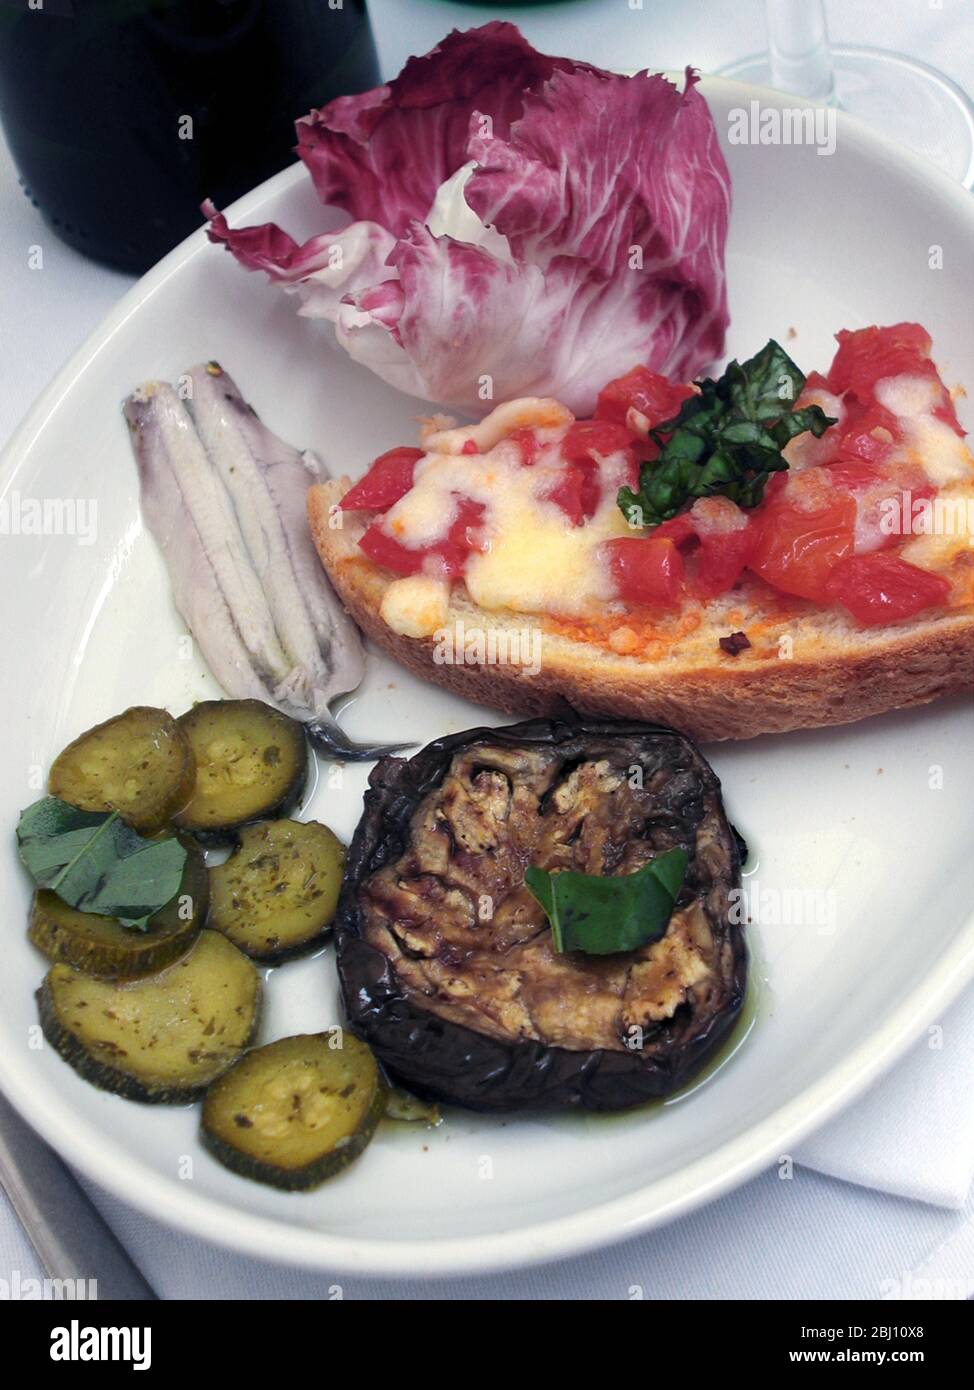 Antipasti-Teller mit marinierten Sardellen, gegrillten Auberginen, Raddicchio-Salat, gegrillten Zucchini und Bruchetta mit Tomaten und Käse in Ruhe Stockfoto